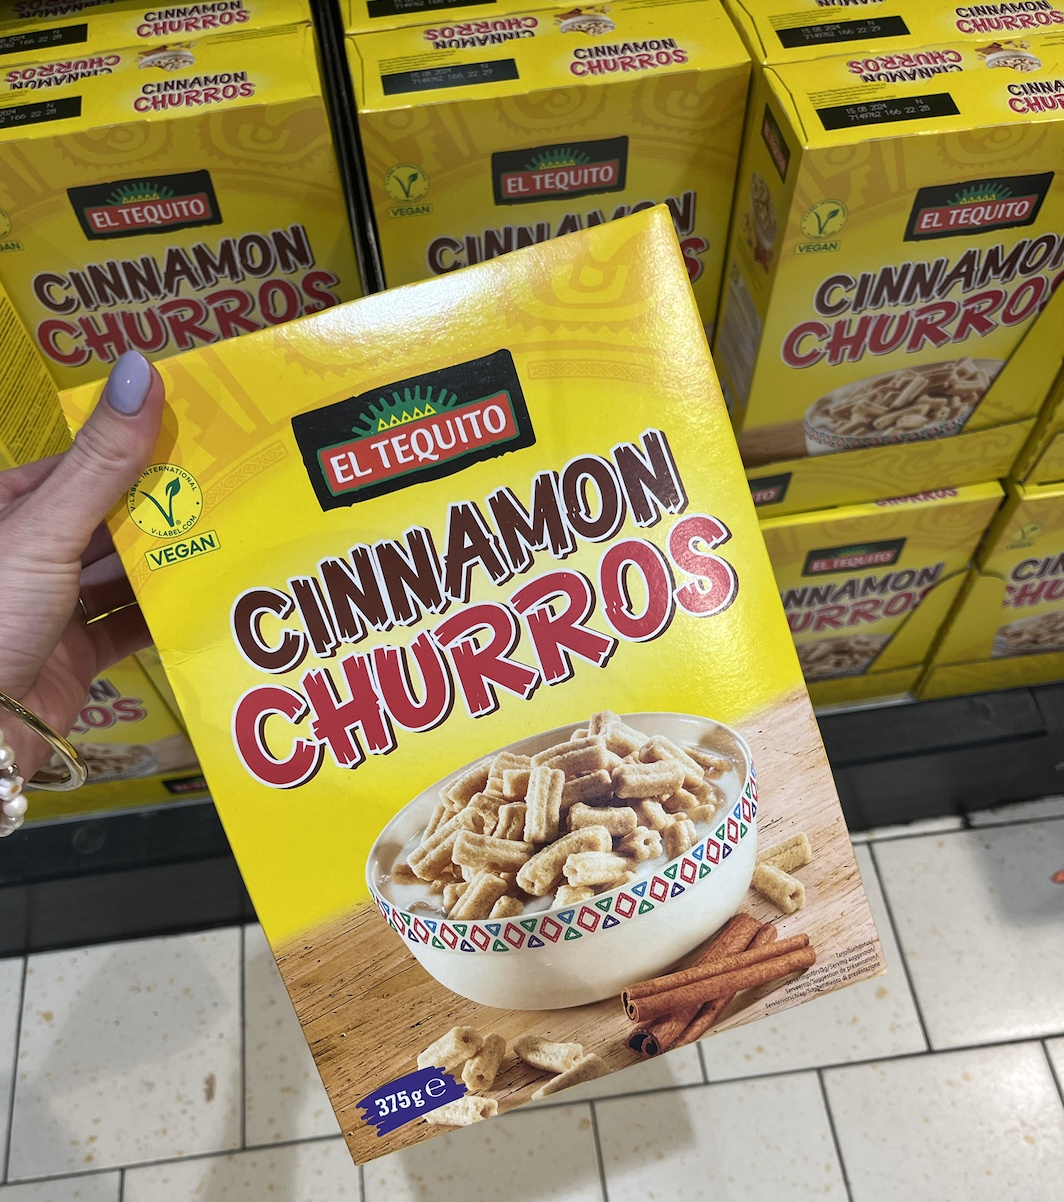 Lekkerrr: je kunt nu mini Lidl kopen | de cereals FavorFlav bij churros